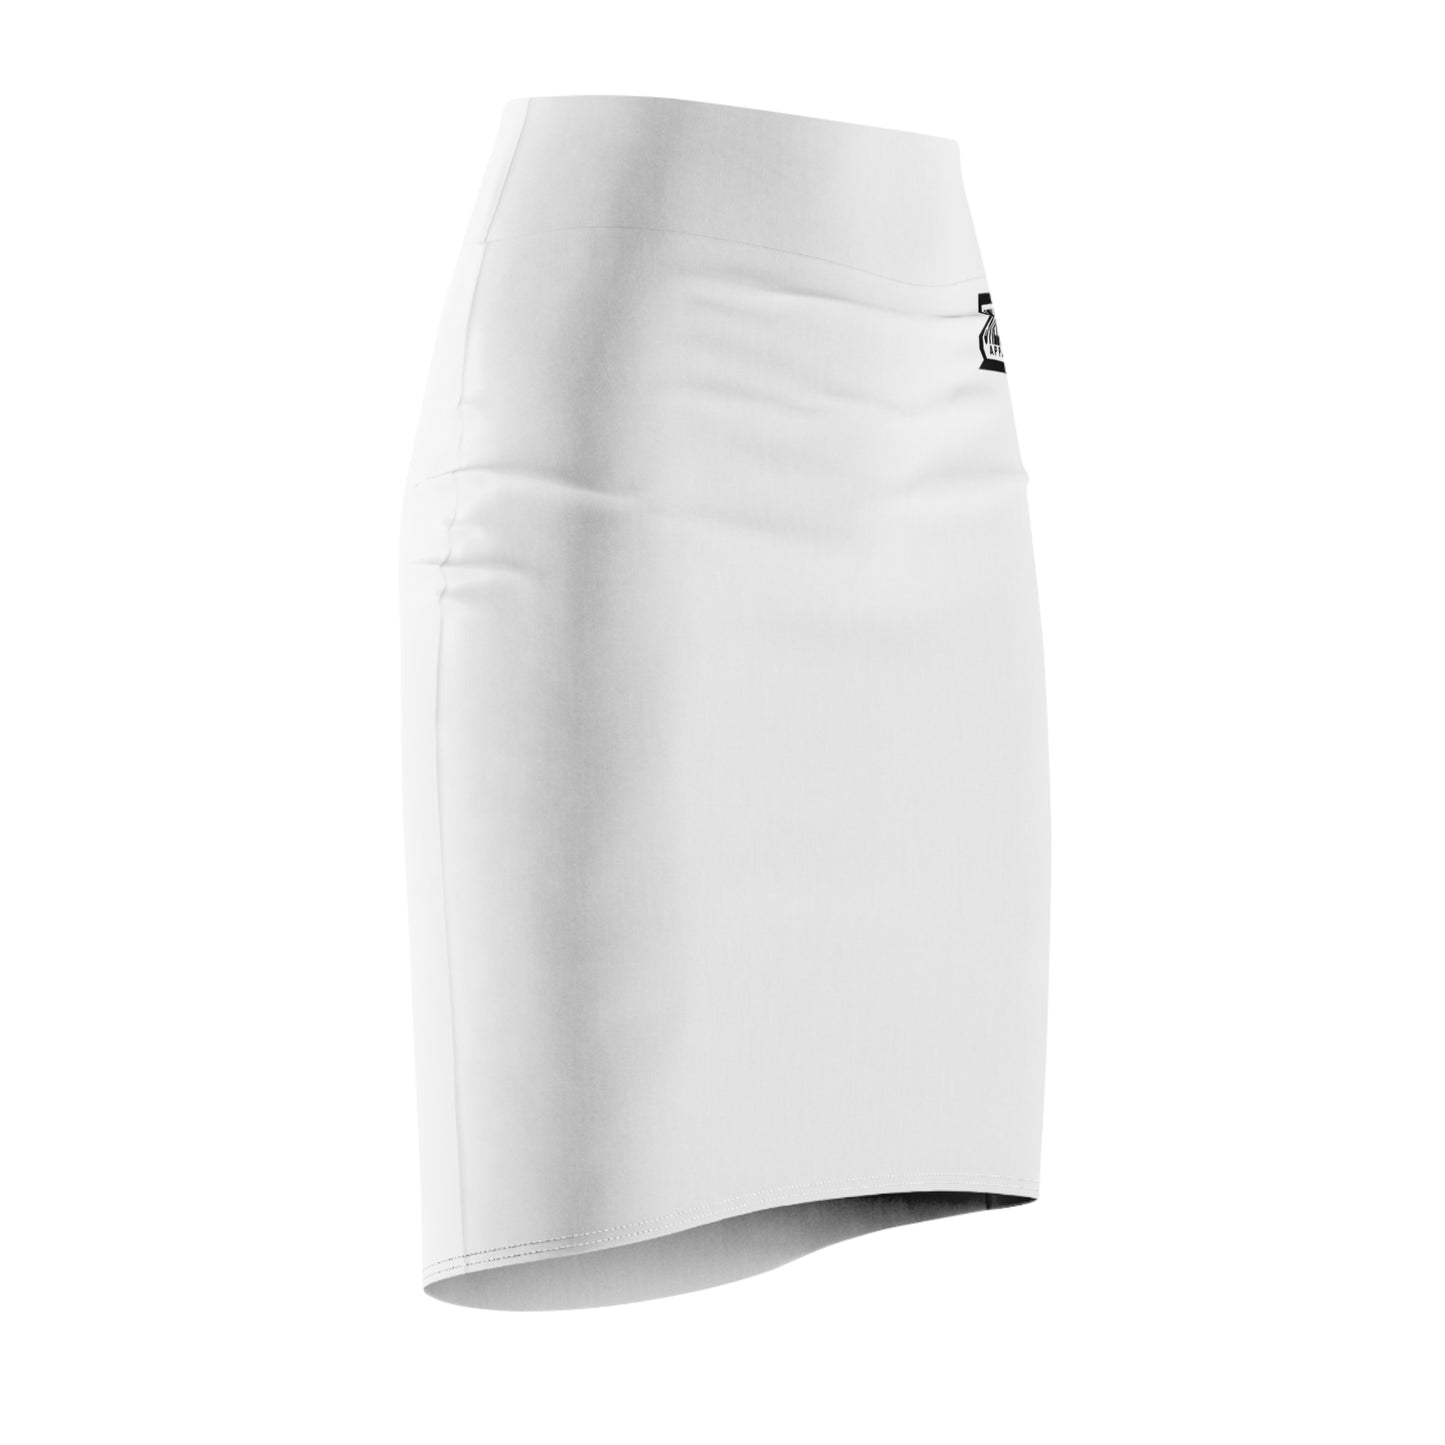 STILLGETPAID® APPAREL Women's Pencil Skirt